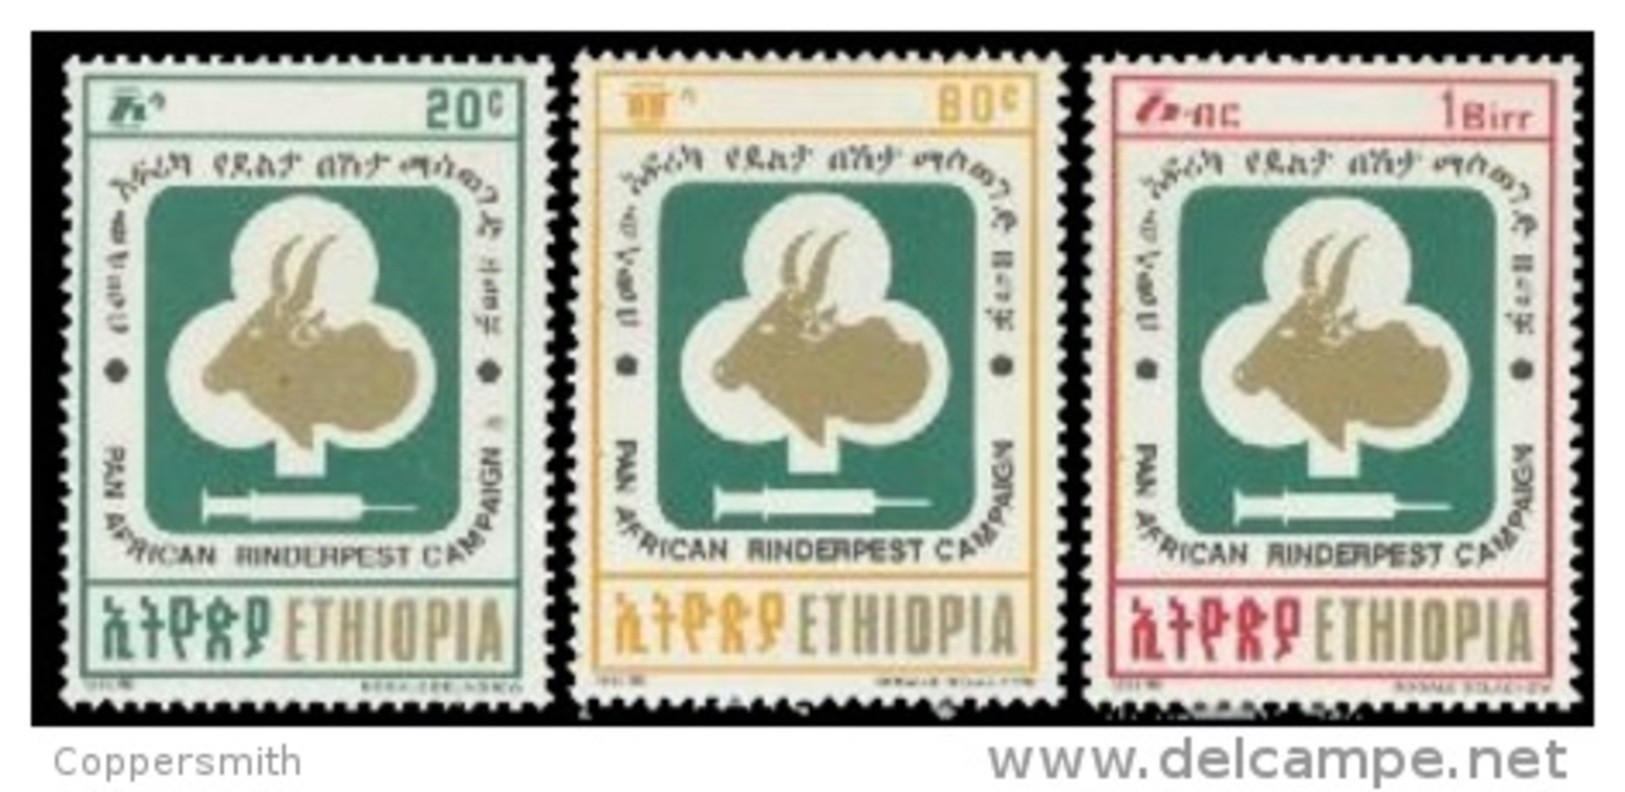 (342) Ethiopia / Ethiopie  Medicine / Animals / Tiere / Dieren / Rinderpest / 1992   ** / Mnh  Michel 1420-22 - Ethiopie